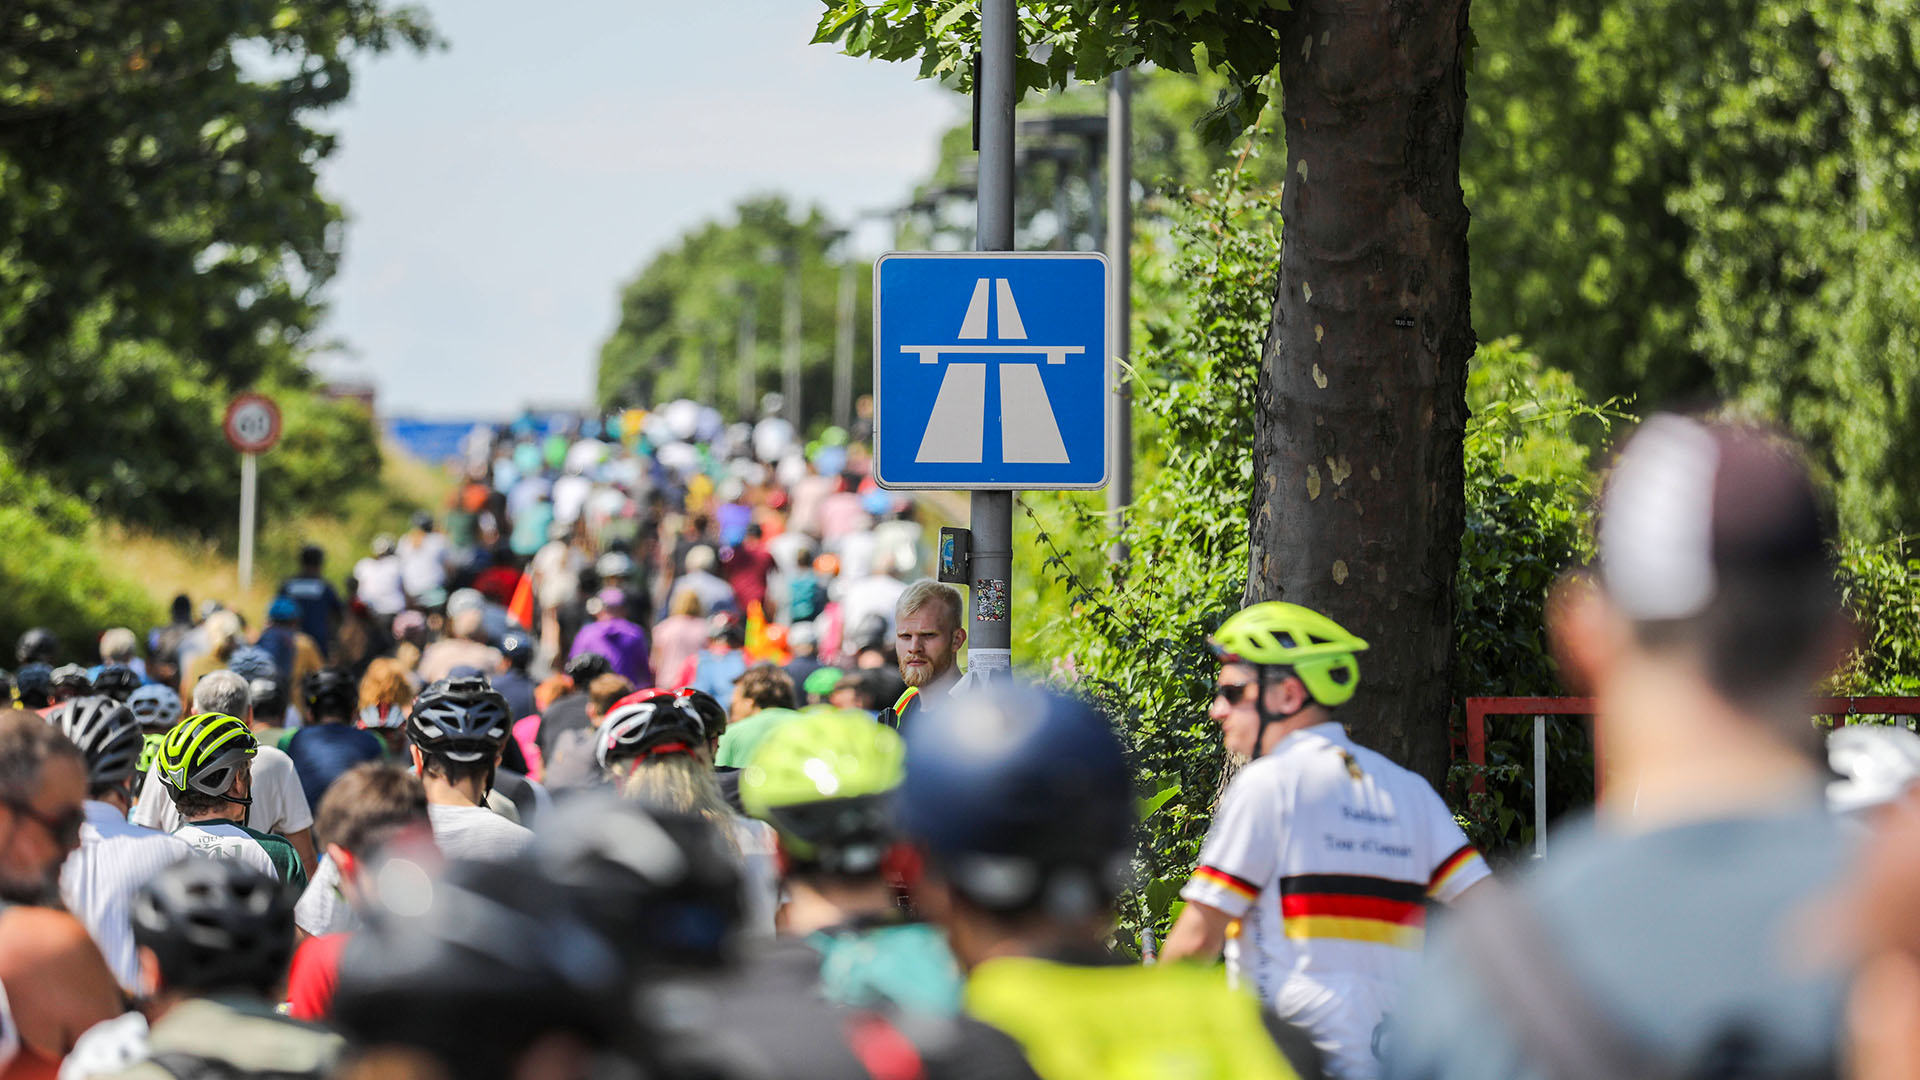 Mit dem Rad über die Berliner Stadtautobahn: Zehntausende Radfahrerinnen und Radfahrer beteiligen sich an der 48. ADFC-Sternfahrt. (Quelle: imago-images/Andreas Friedrichs)